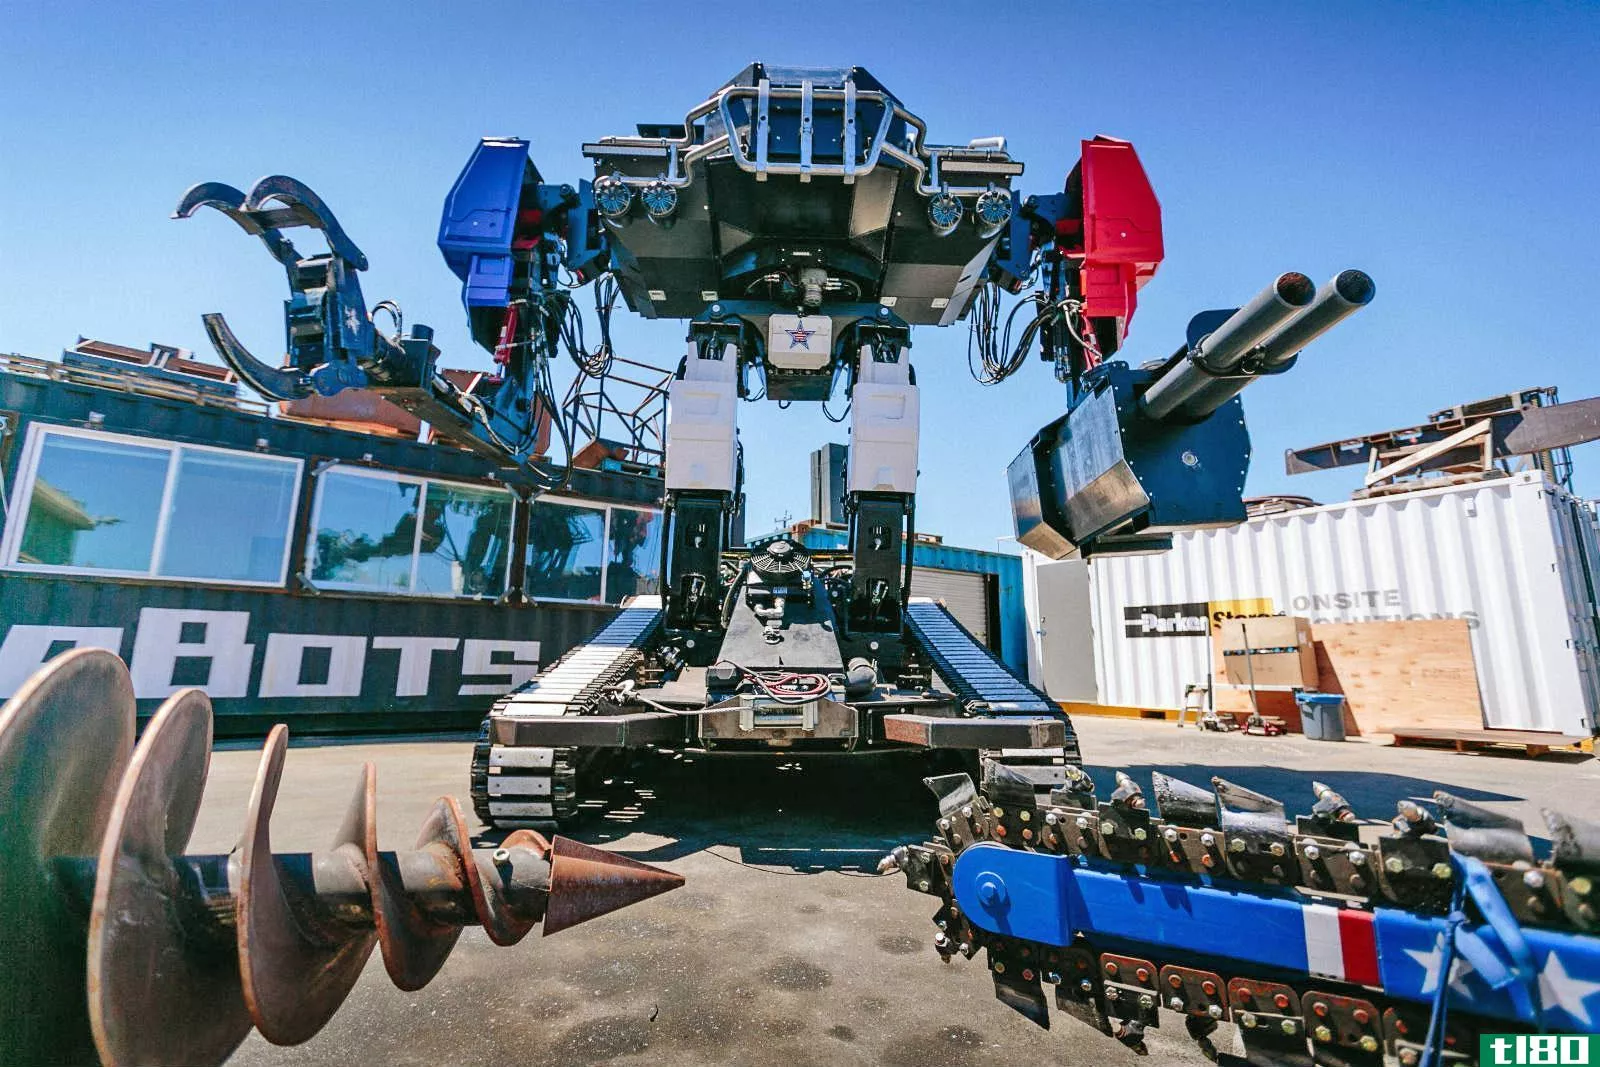 巨型机器人搏击组织者称下一步是巨型机器人搏击联盟